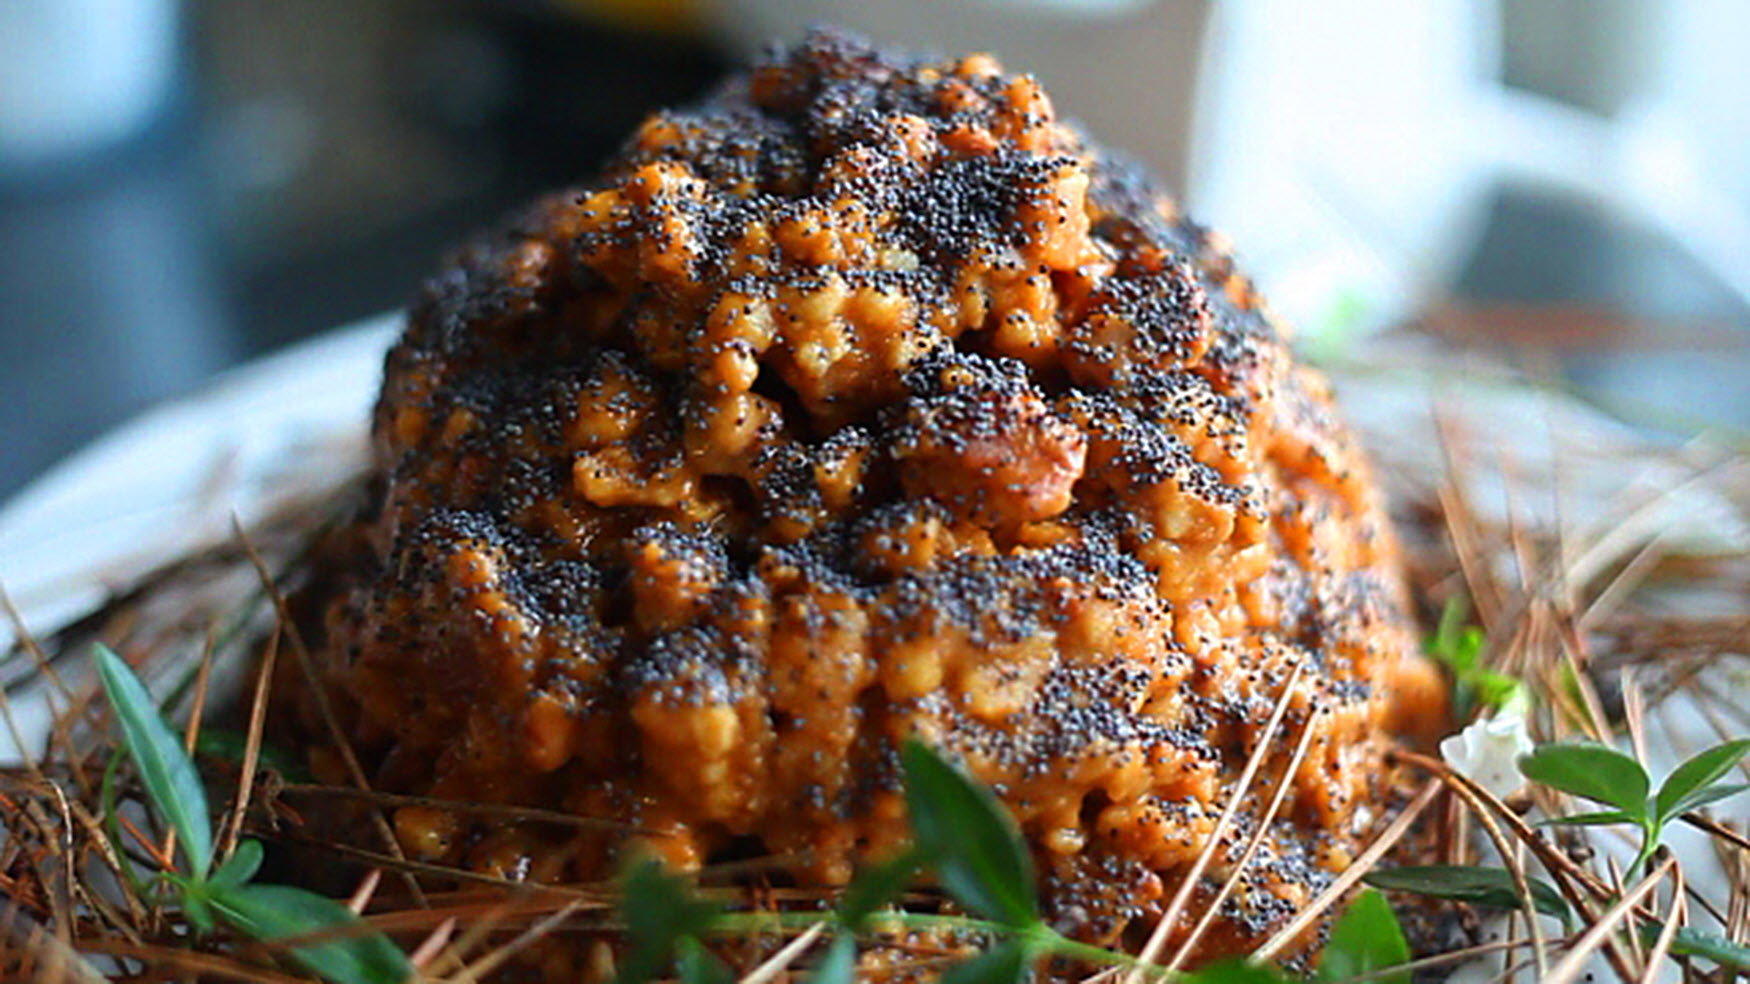 Russian Ant Hill Cake Recipe | Allrecipes